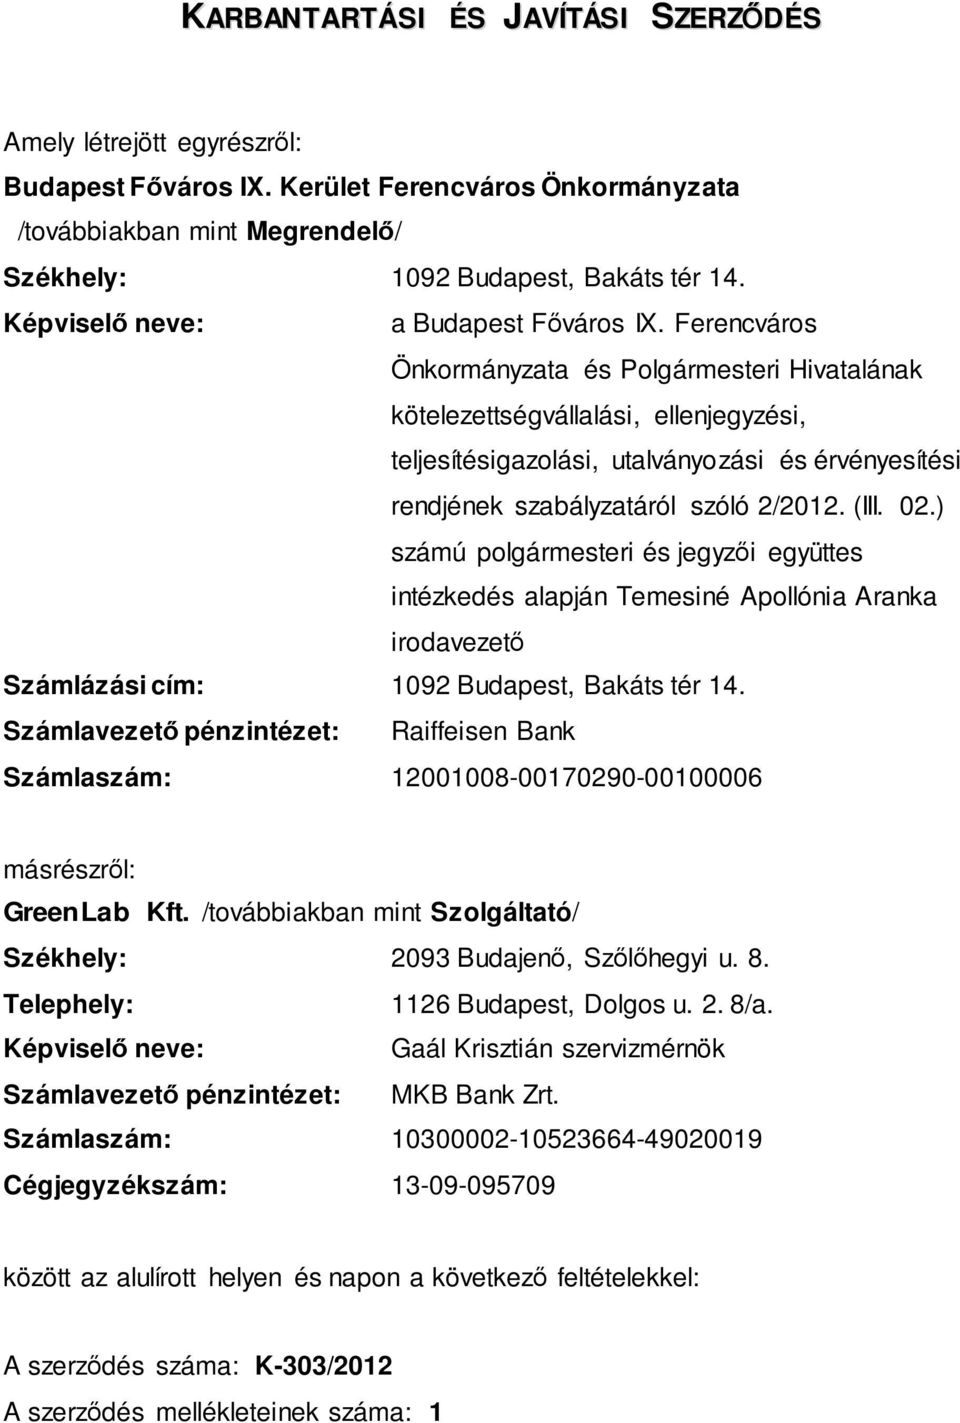 Ferencváros Önkormányzata és Polgármesteri Hivatalának kötelezettségvállalási, ellenjegyzési, teljesítésigazolási, utalványozási és érvényesítési rendjének szabályzatáról szóló 2/2012. (III. 02.